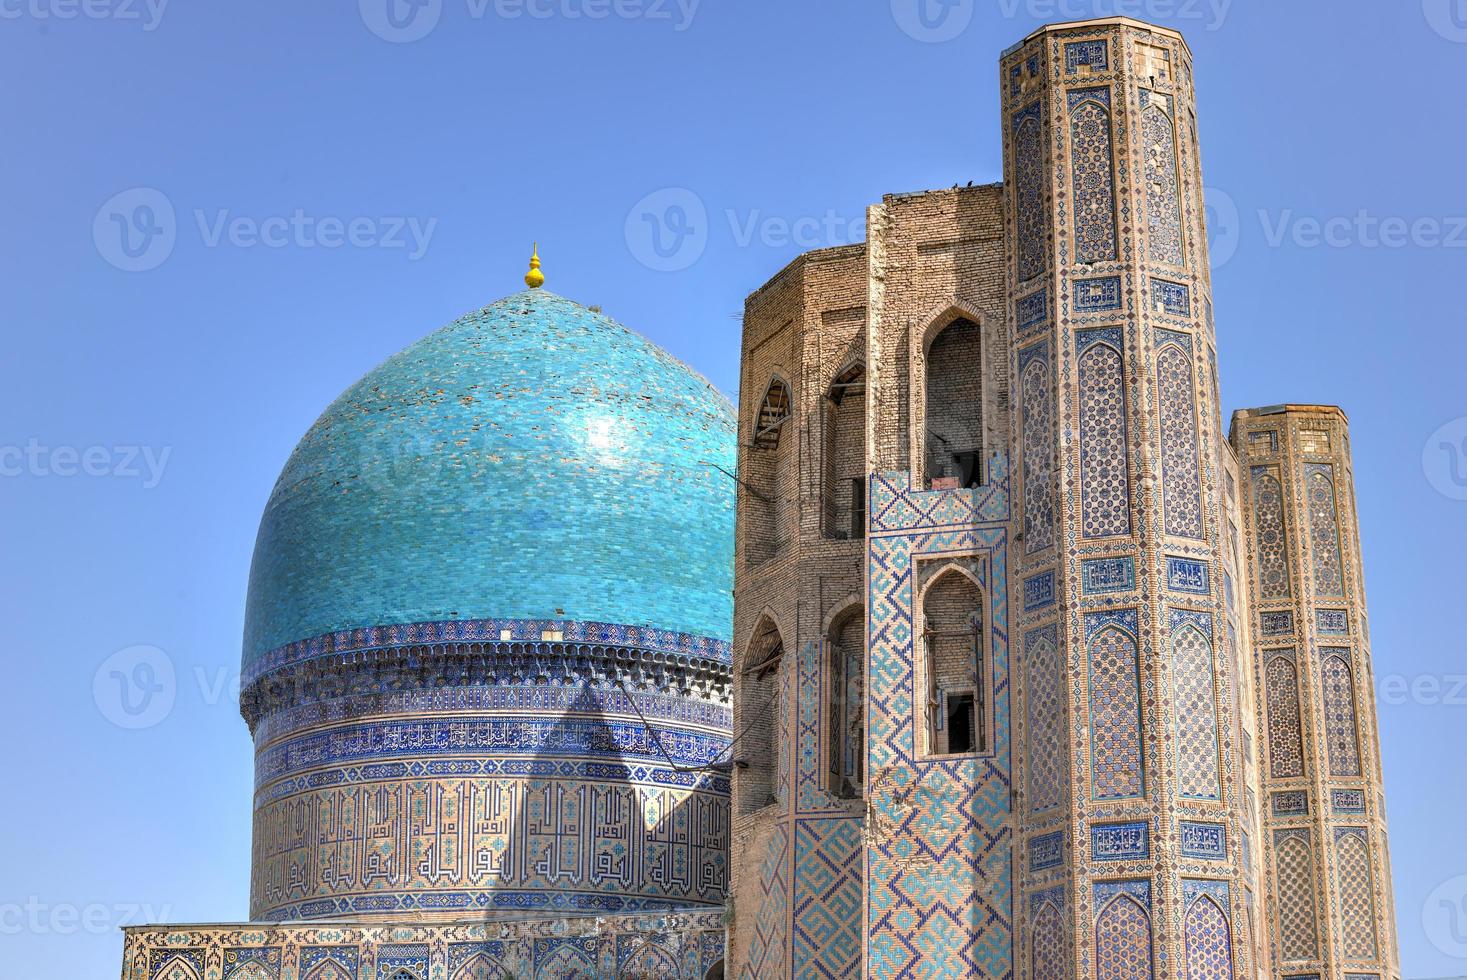 mesquita bibi khanym em samarcanda, uzbequistão. no século XV era uma das maiores e mais magníficas mesquitas do mundo islâmico. foto